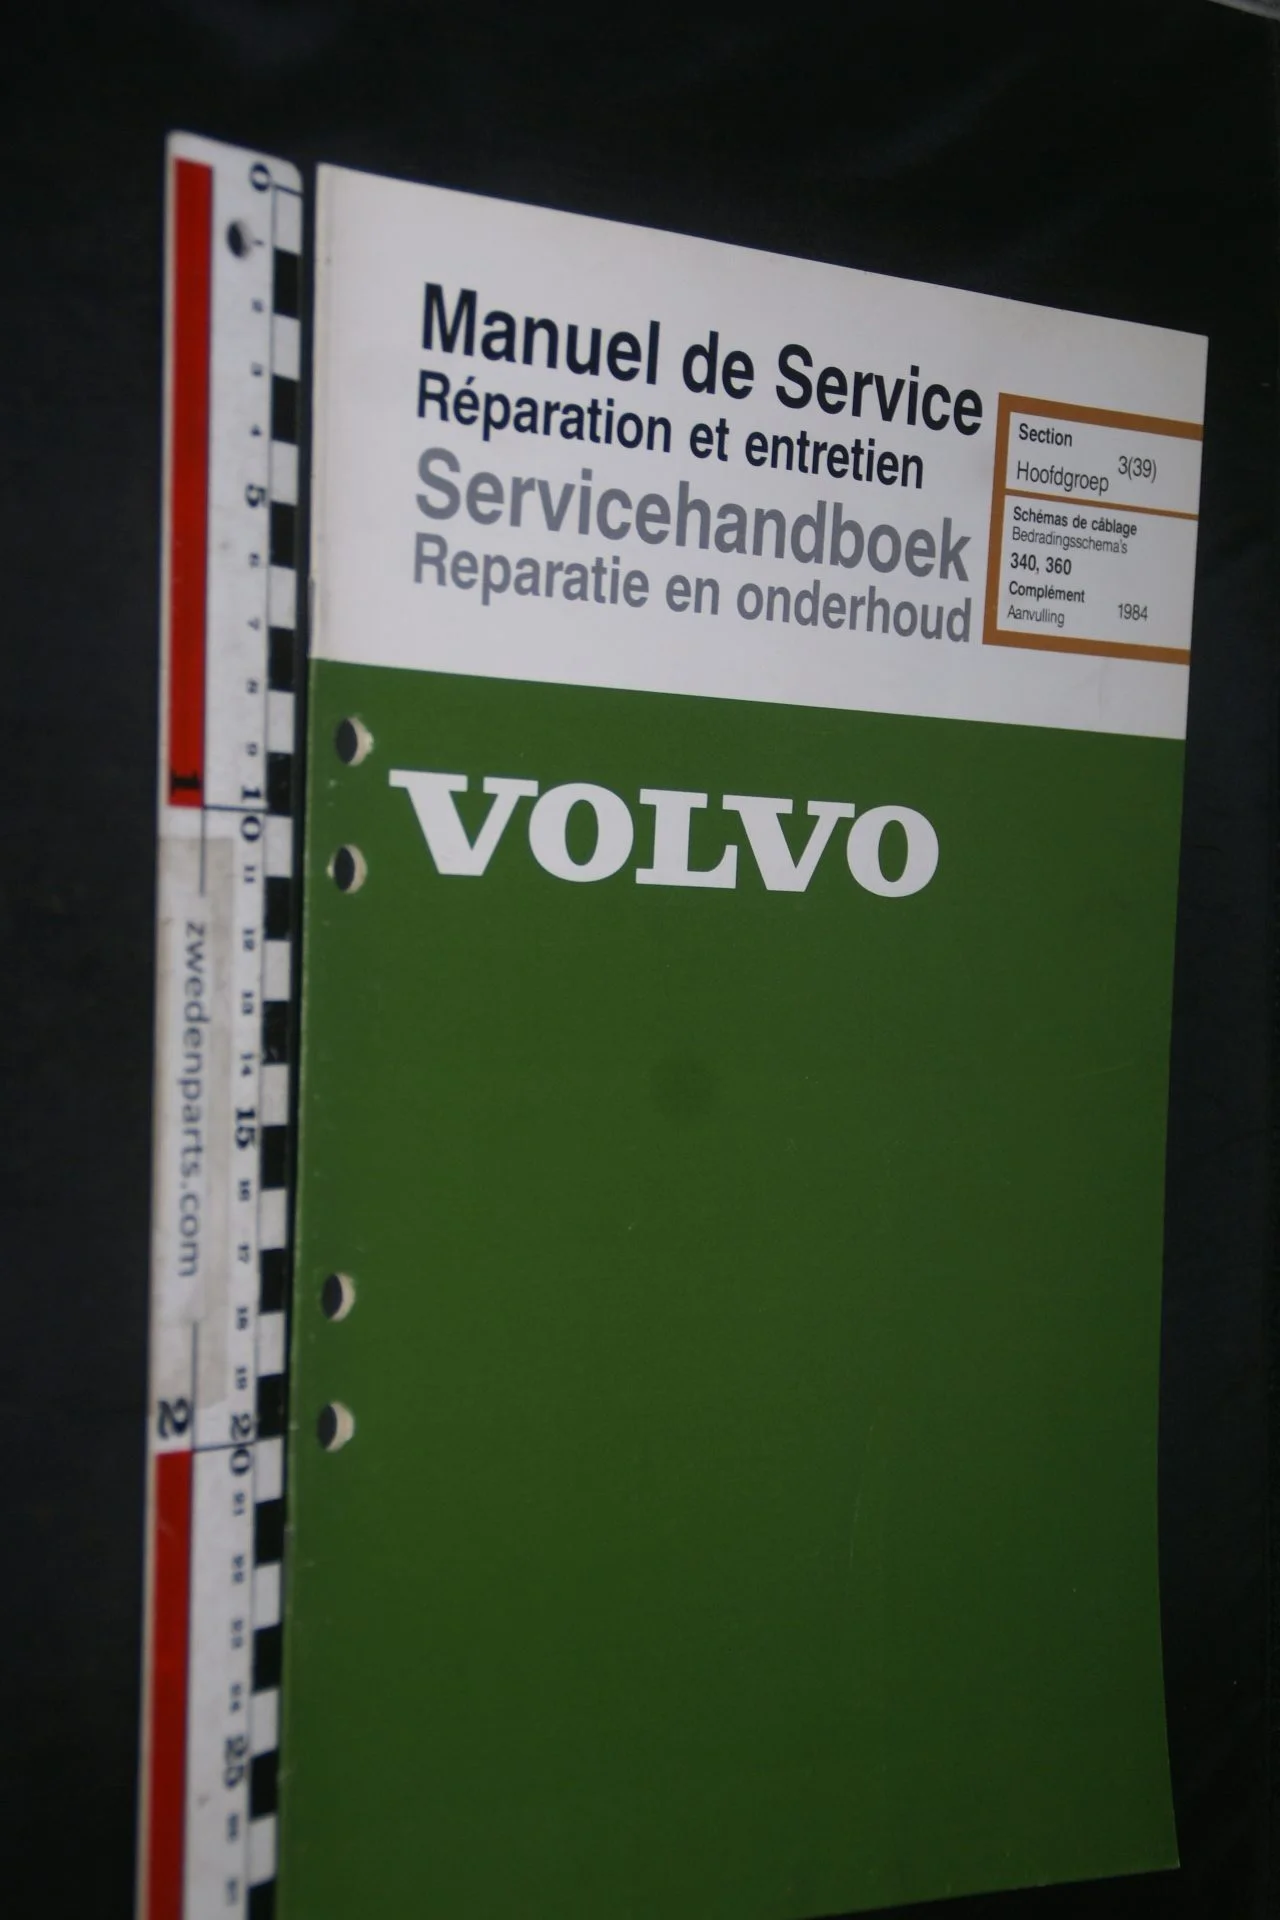 DSC06850 1983 origineel Volvo 343 servicehandboek 3(39) bedradingsschema 1 van 1500 TP 35187-1, Francais, Hollands